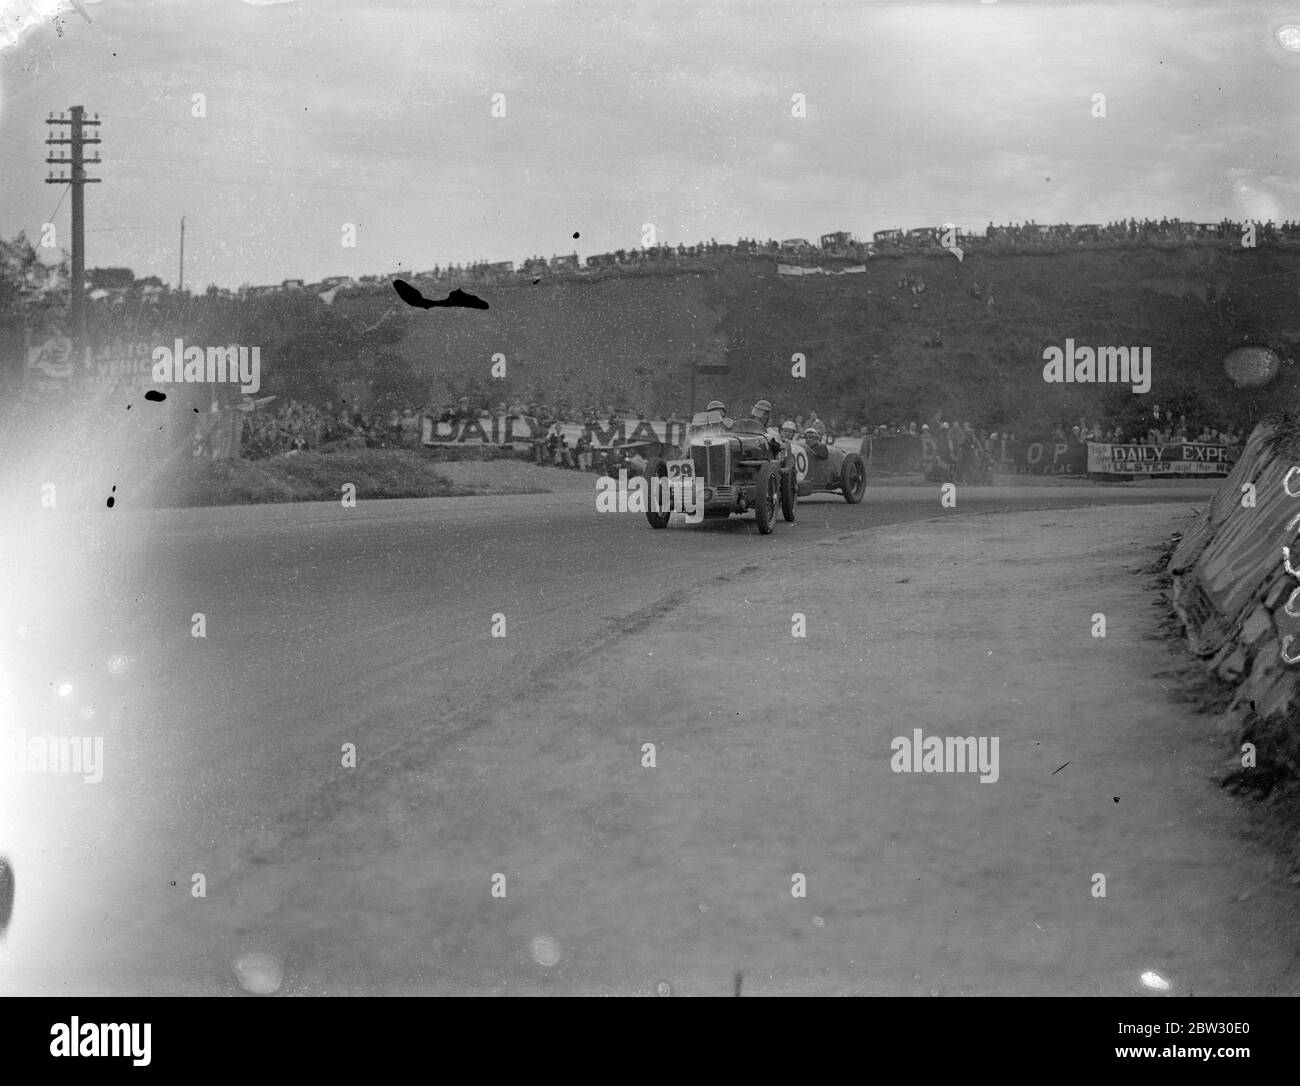 C R Whitcroft gana ulster carrera de coches turísticos después de carrera emociones . C R Whitcroft en un coche Riley fue el ganador y G E T Eyston , también en un Riley , fue segundo en la carrera de coches de trofeo turístico de Ulster en Belfast, Irlanda , después de una de las carreras más emocionantes jamás visto en el famoso circuito de ARDS . Una vista general como coches redondeados Quarry Corner durante la carrera. 21 de agosto de 1932 Foto de stock